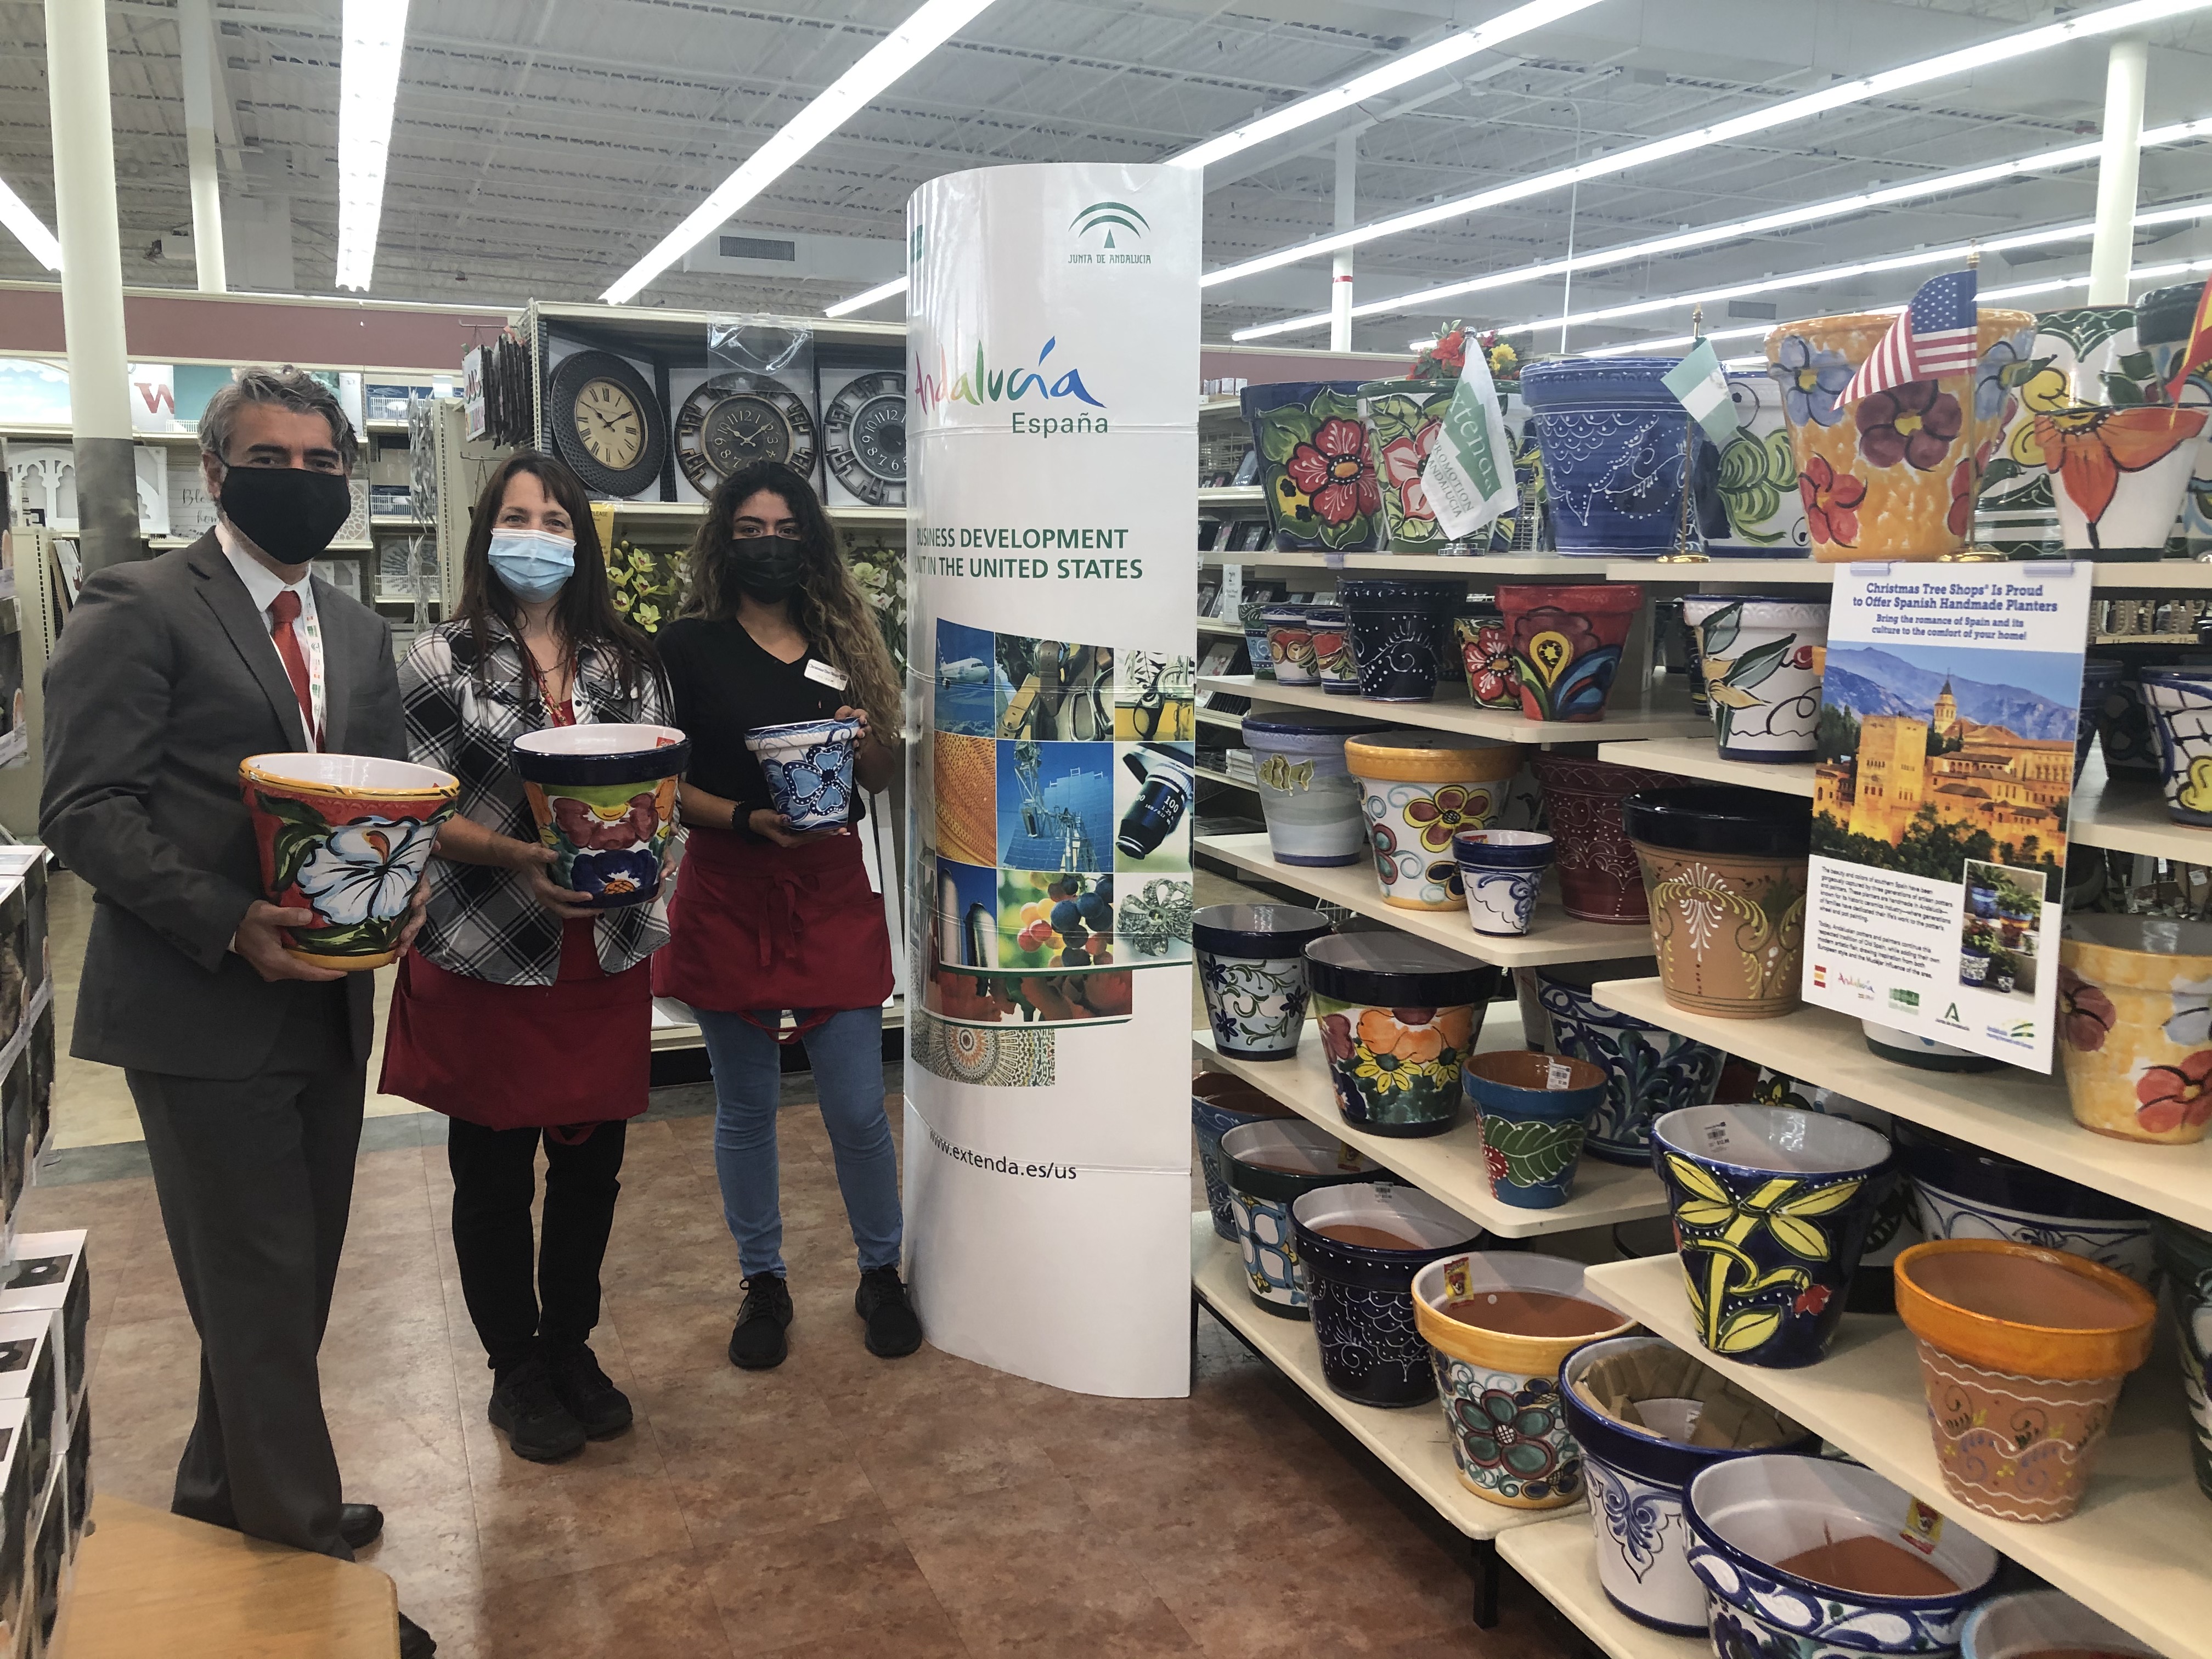 Extenda potencia la cerámica decorativa andaluza en Estados Unidos, con una campaña de marketing en una cadena de tiendas de hogar y jardín